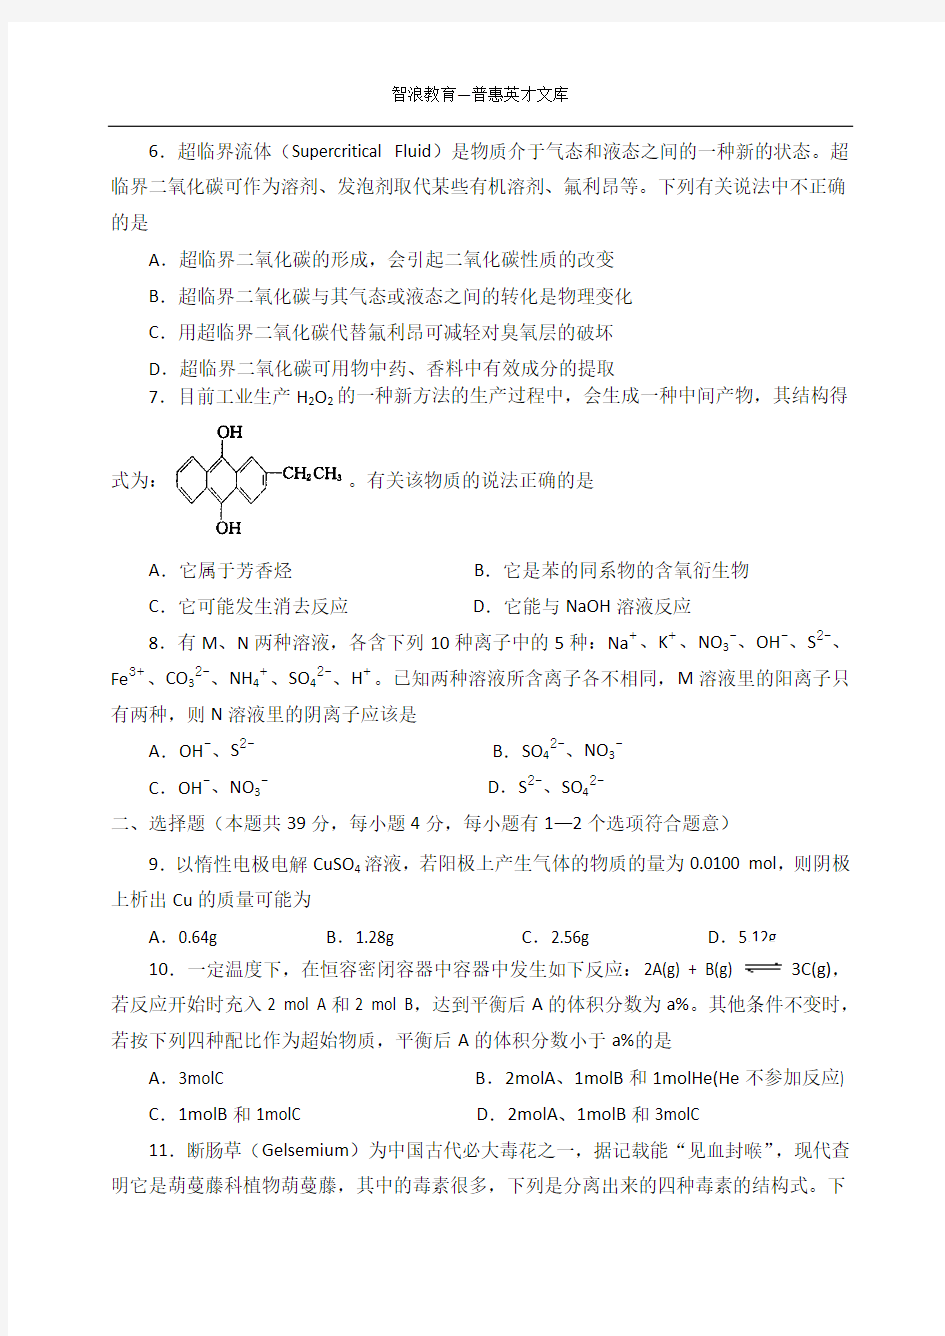 湖南省2007年高中学生化学竞赛试卷